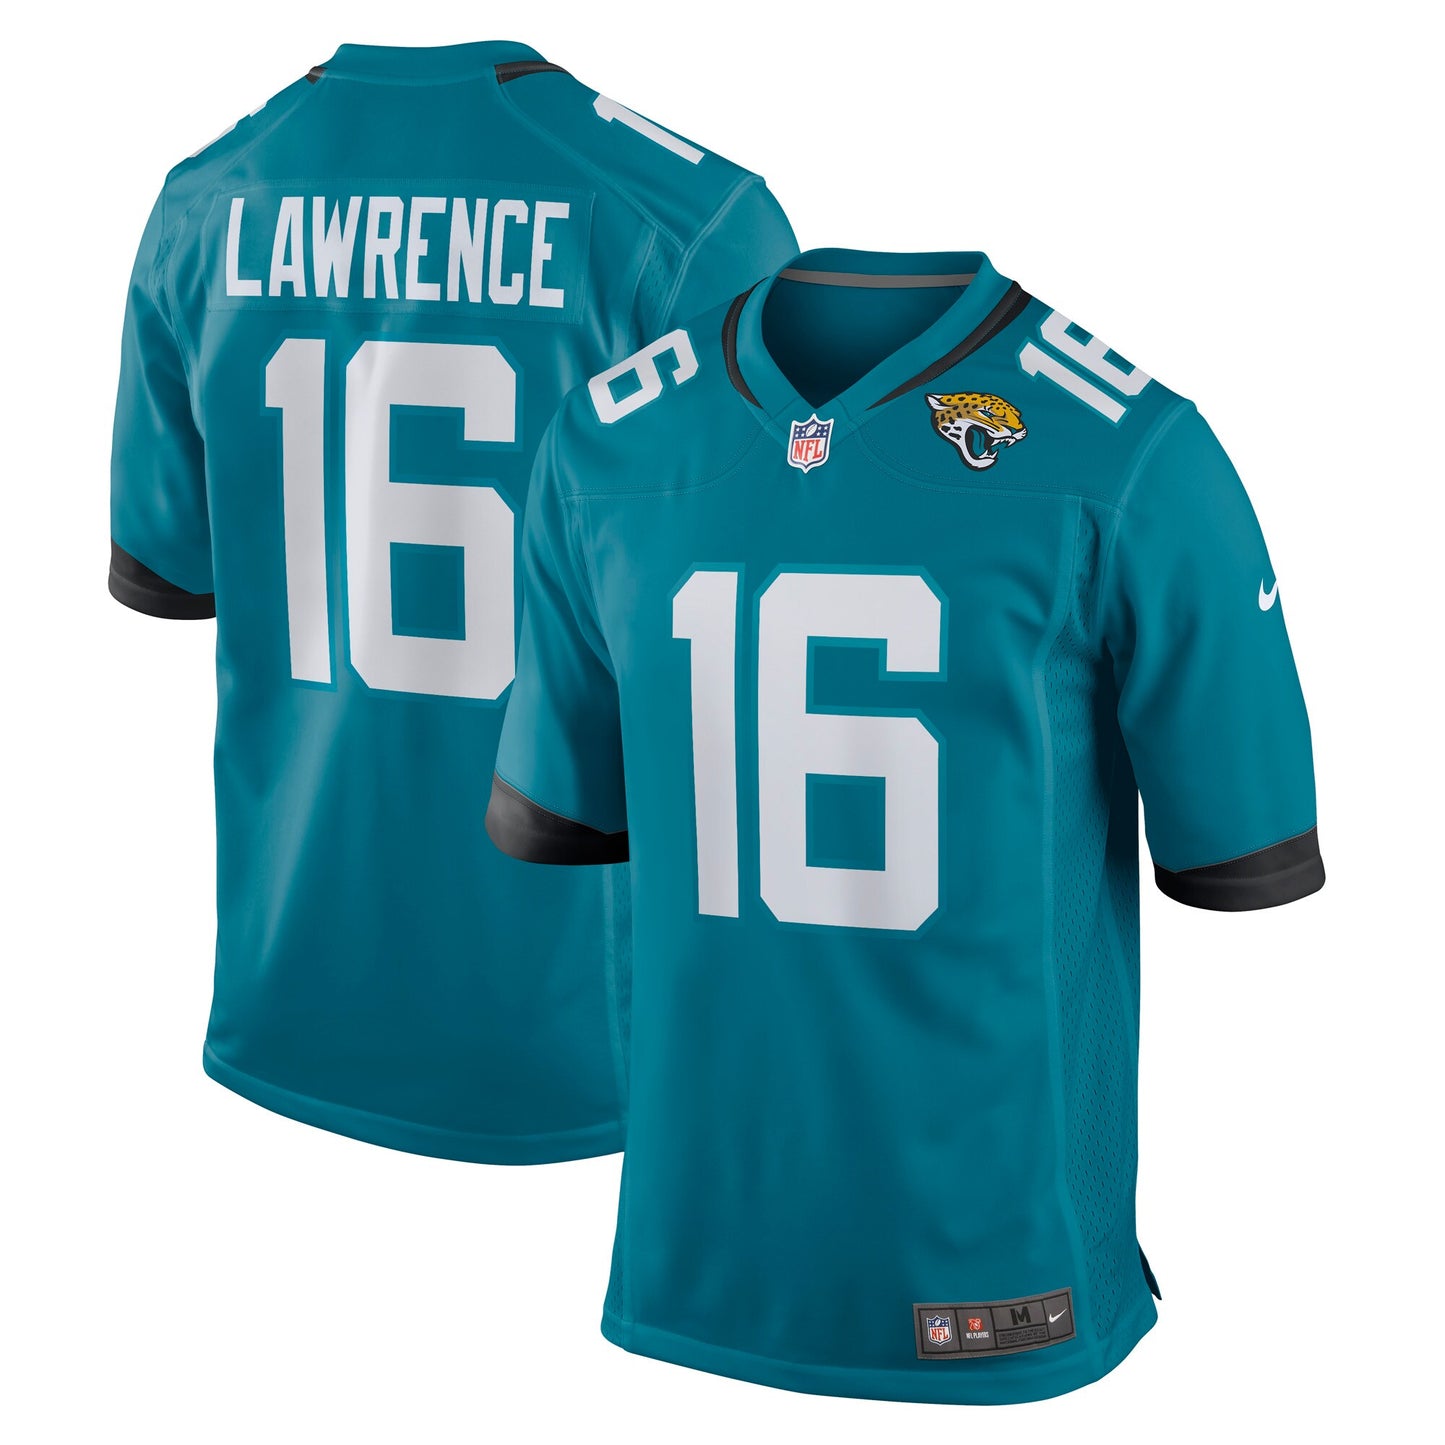 Trevor Lawrence Jacksonville Jaguars Nike 2021 NFL Draft First Round Pick Game Jersey - Teal